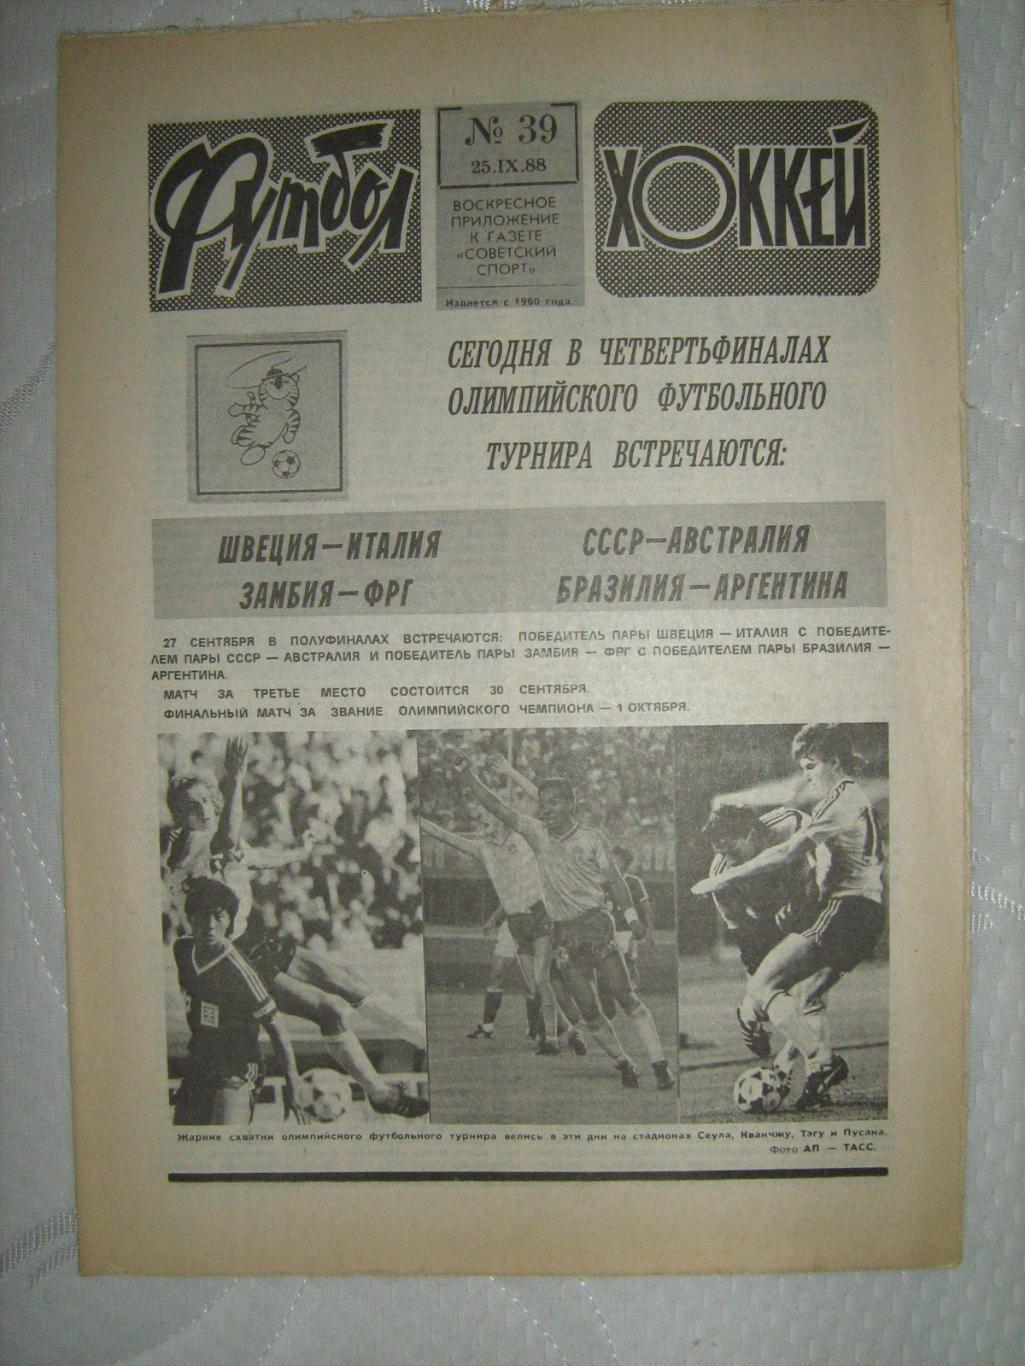 Еженедельник Футбол -Хоккей - 1988(44,42,41,34,39,33,23,27) 4